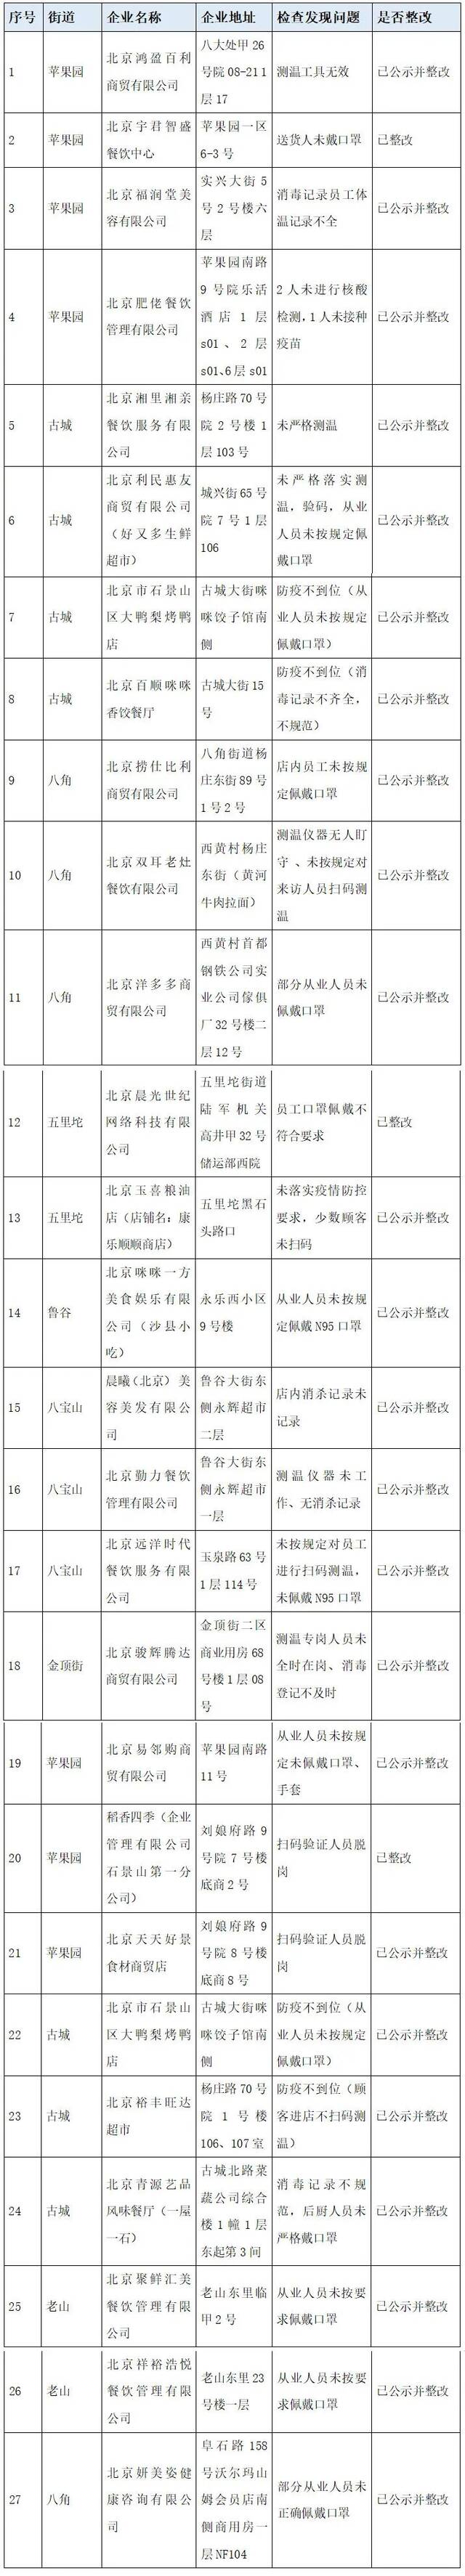 北京石景山通报27家防疫不力企业，涉及餐馆、商超等